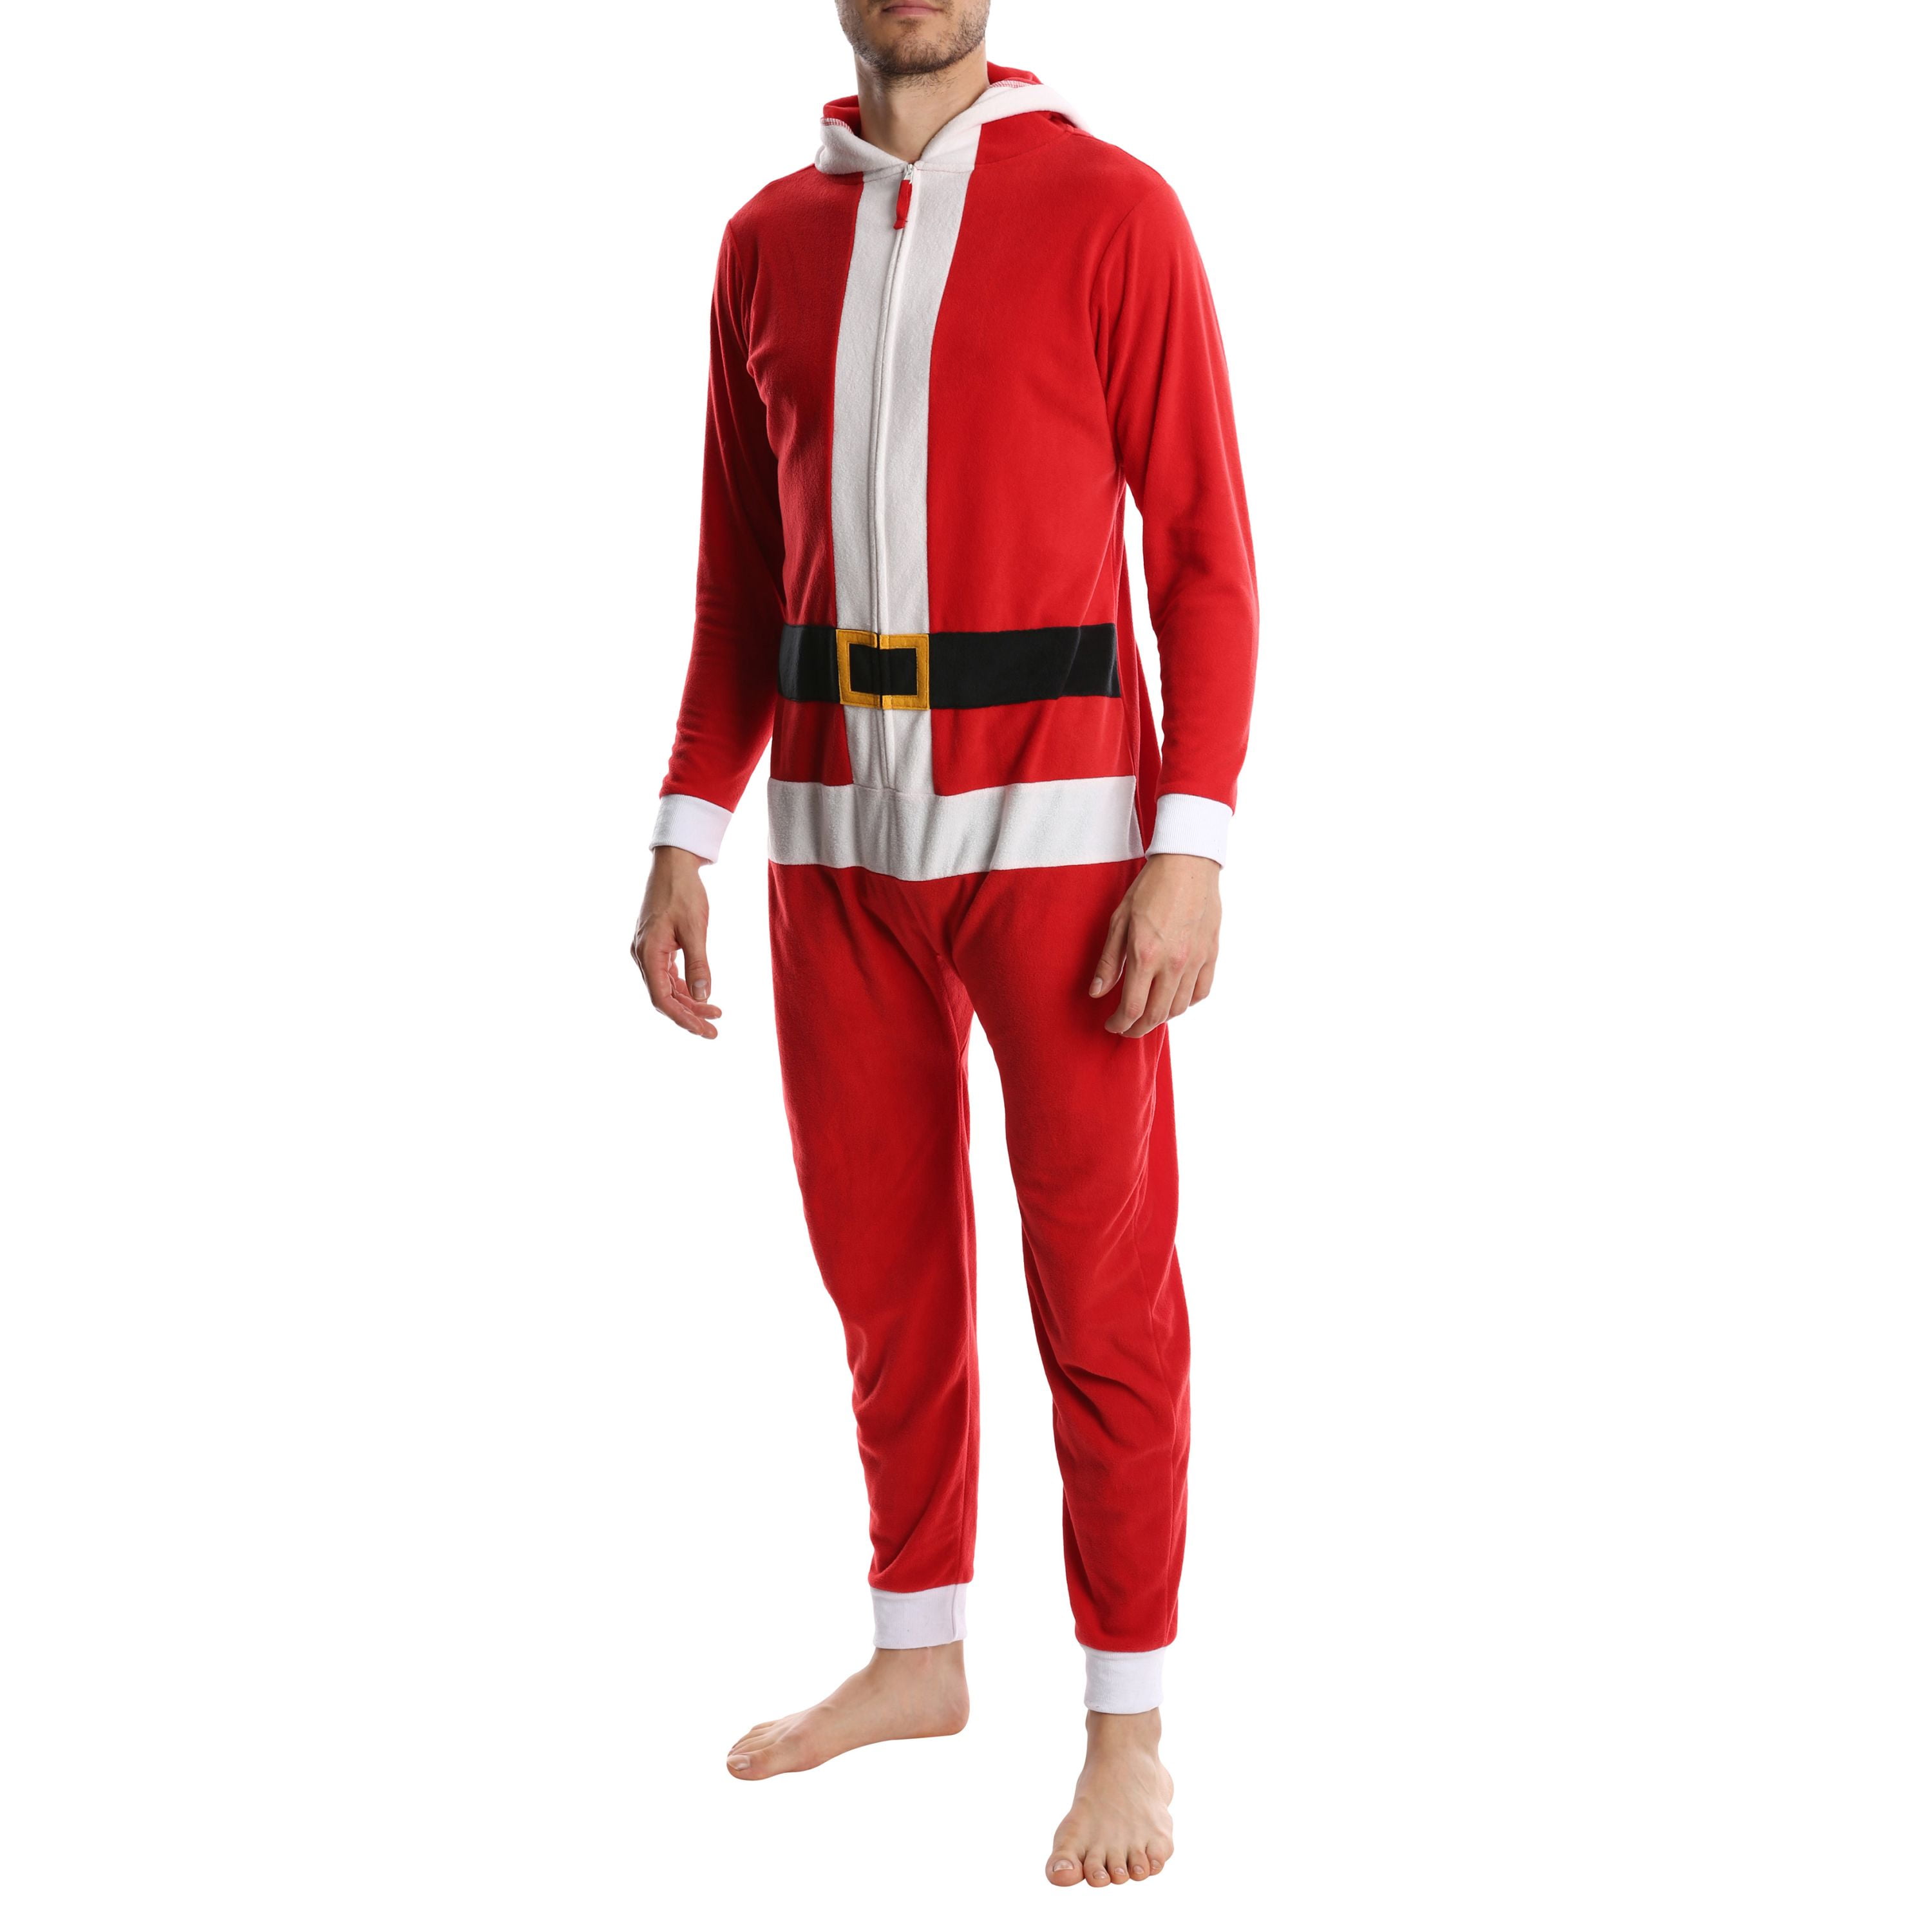 SLEEPHERO Adult Onesie Men Cozy Novelty Onesie Christmas Mens Onesie Holiday Adult Onsie Adult Pyjamas For Men